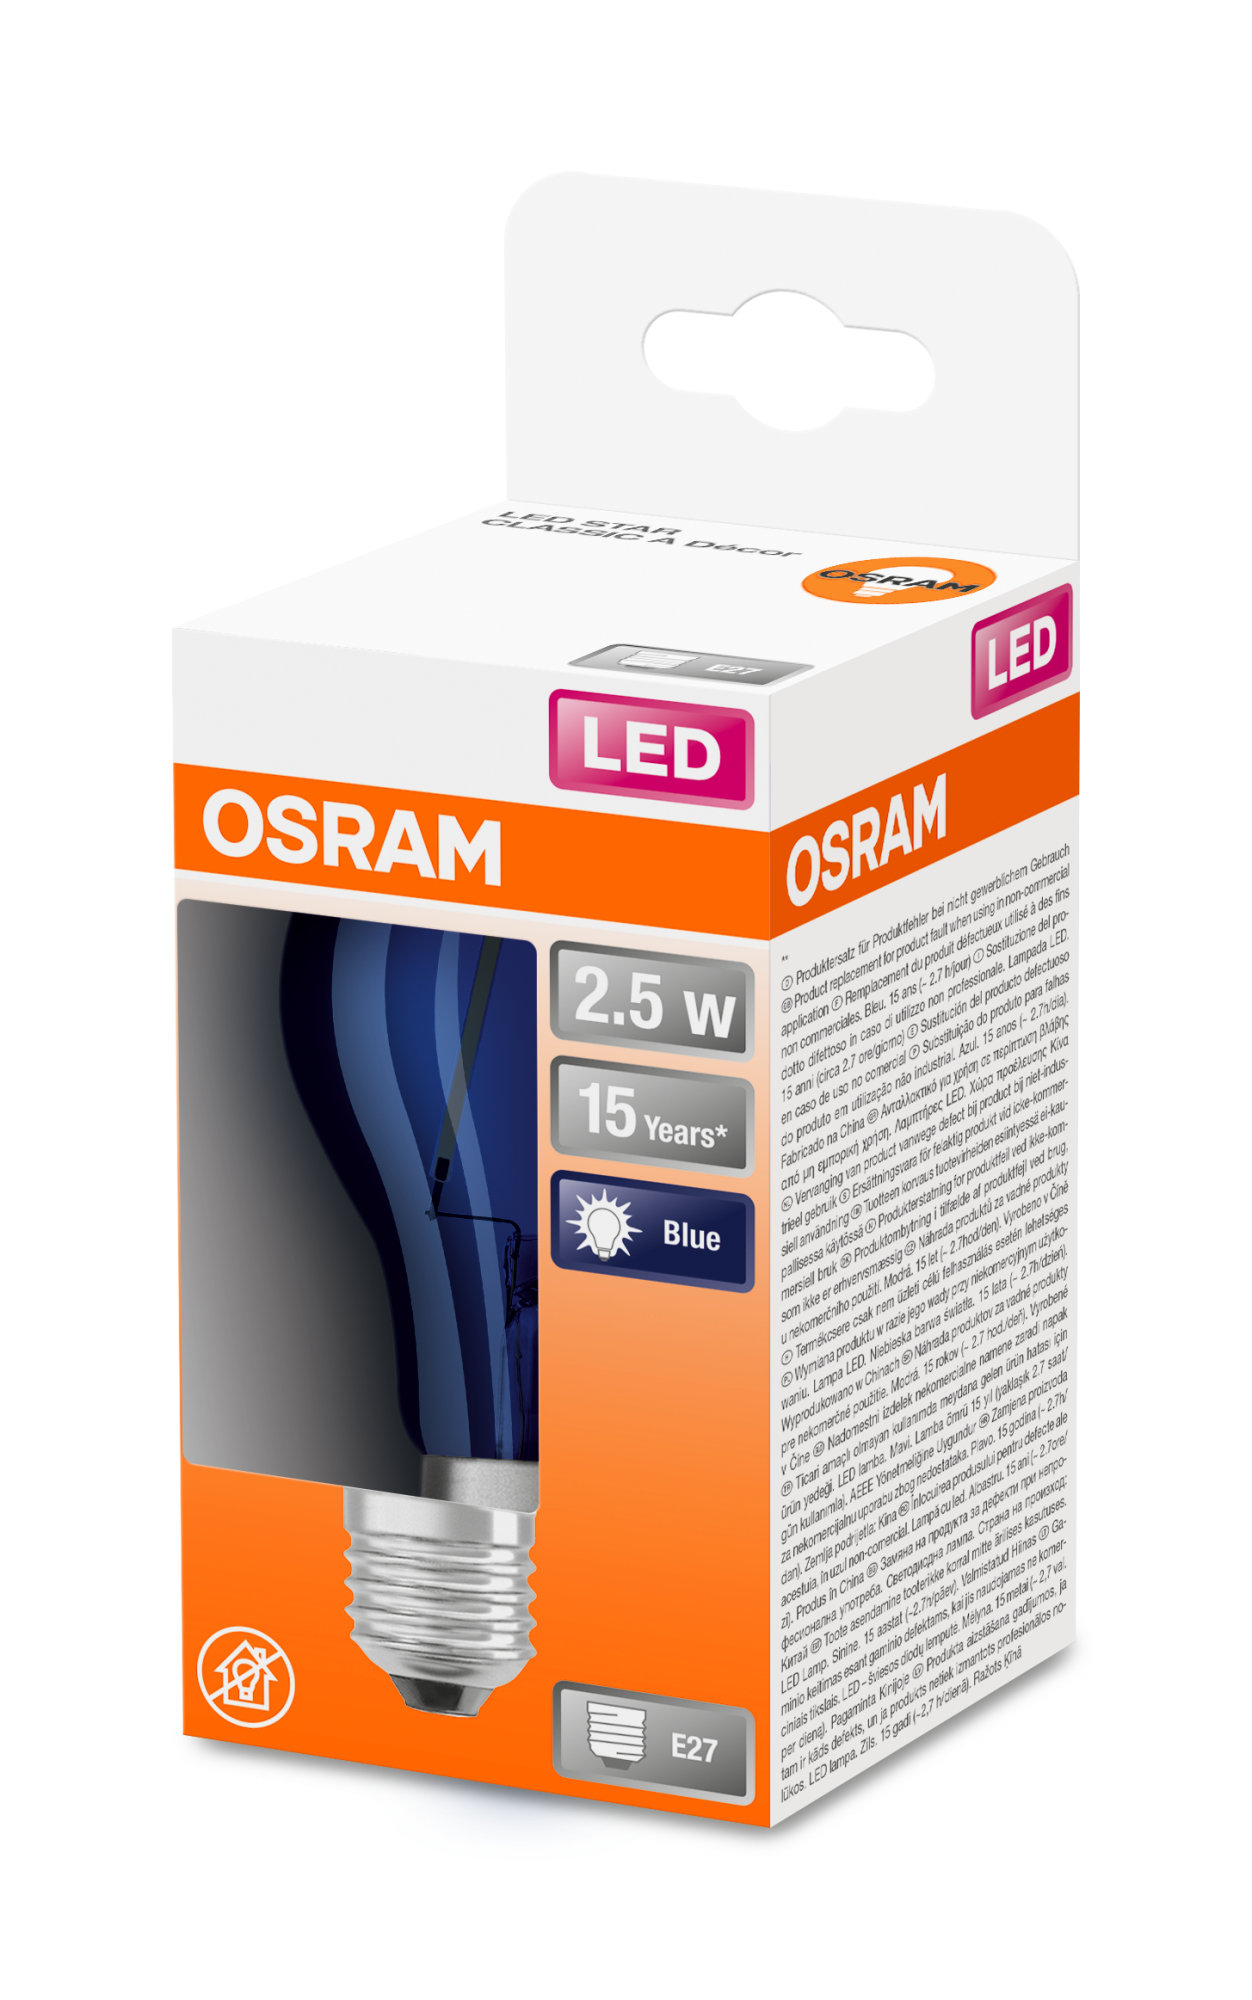 Bec Osram LED SUPERSTAR CLA 15 DécorBlue non-dim 2,5W 827 E27 136lm 2700K